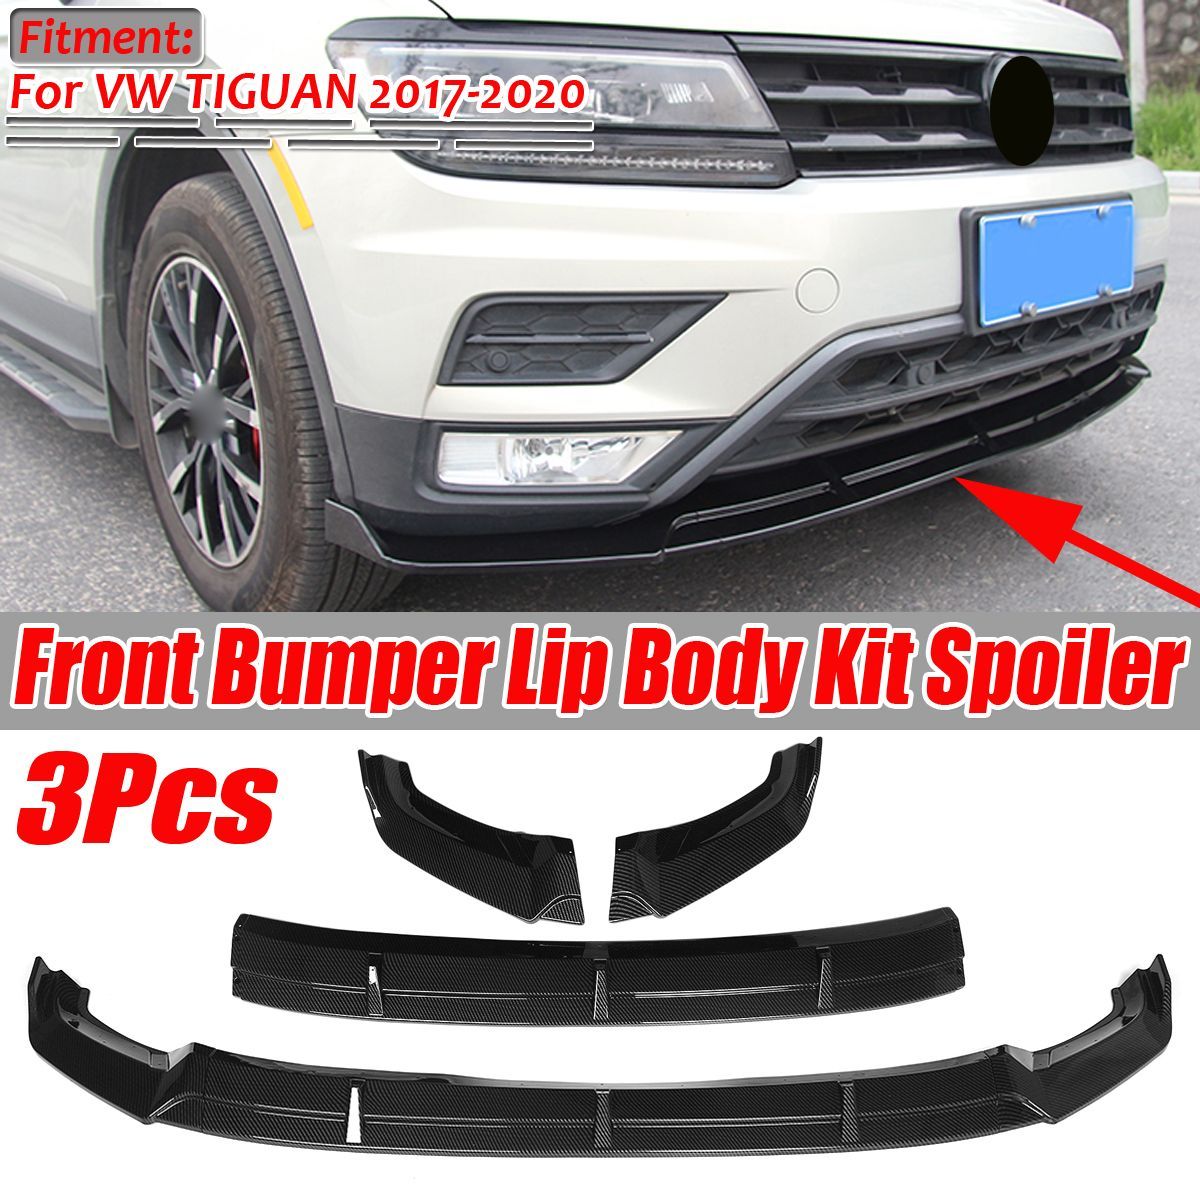 Front-Bumper-Lip-Spoiler-Cover-Trim-Carbon-Fiber-Look-3PCS-For-VW-TIGUAN-2017-2020-1684880